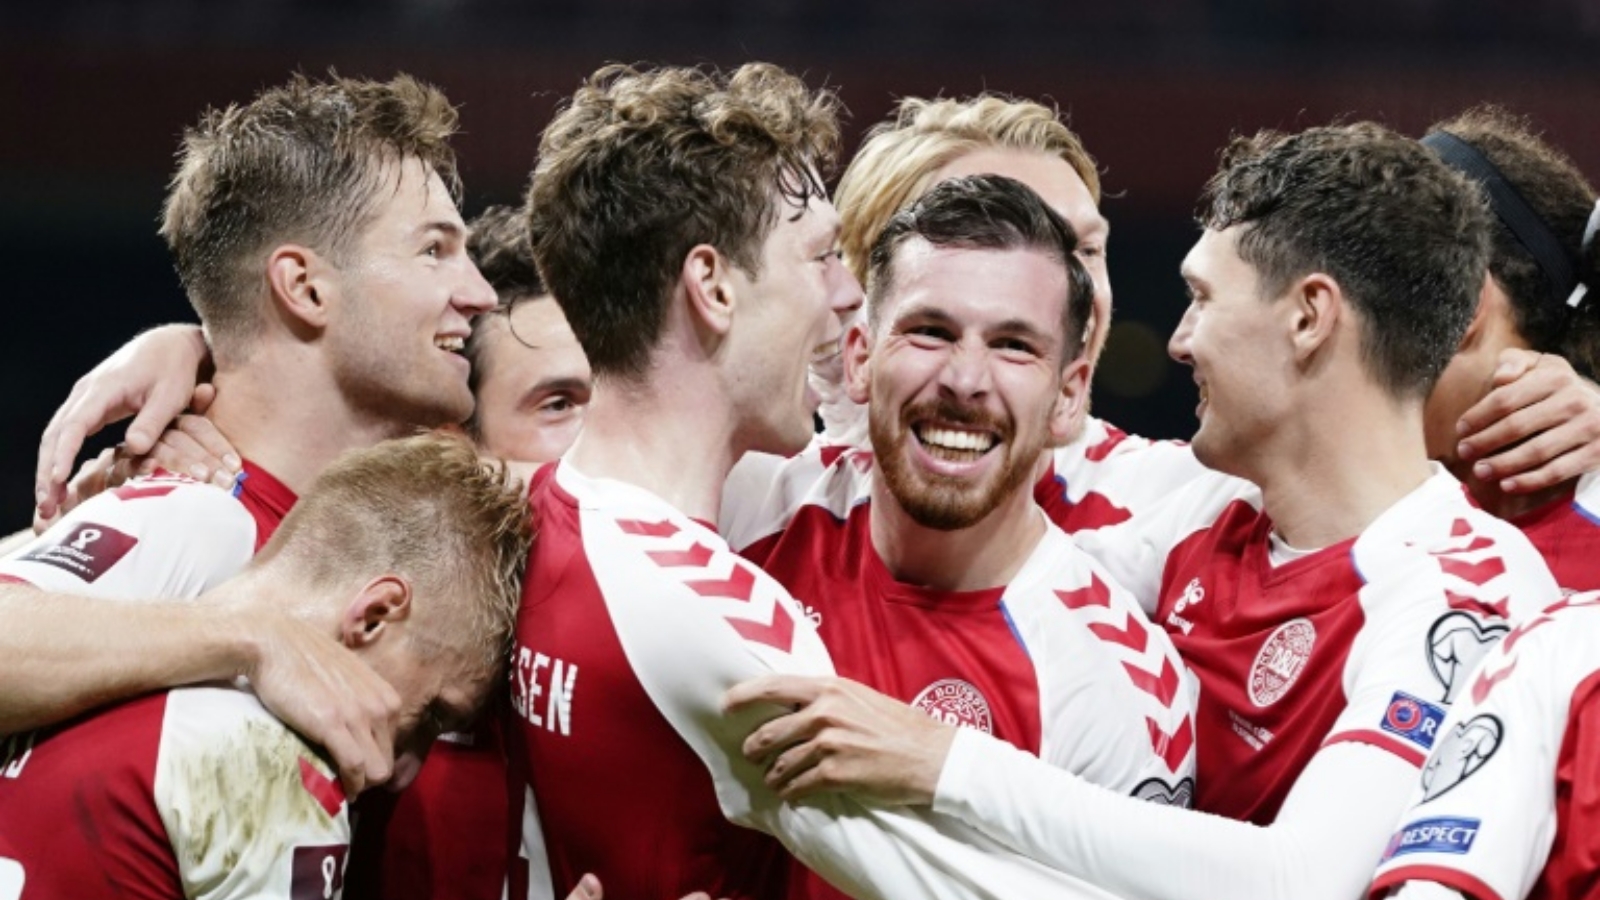 لاعبو الدنمارك يحتفلون بالتسجيل في مرمى إسرائيل خلال لقاء المنتخبين في تصفيات مونديال 2022، كوبنهاغن في 7 أيلول/ سبتمبر 2021.